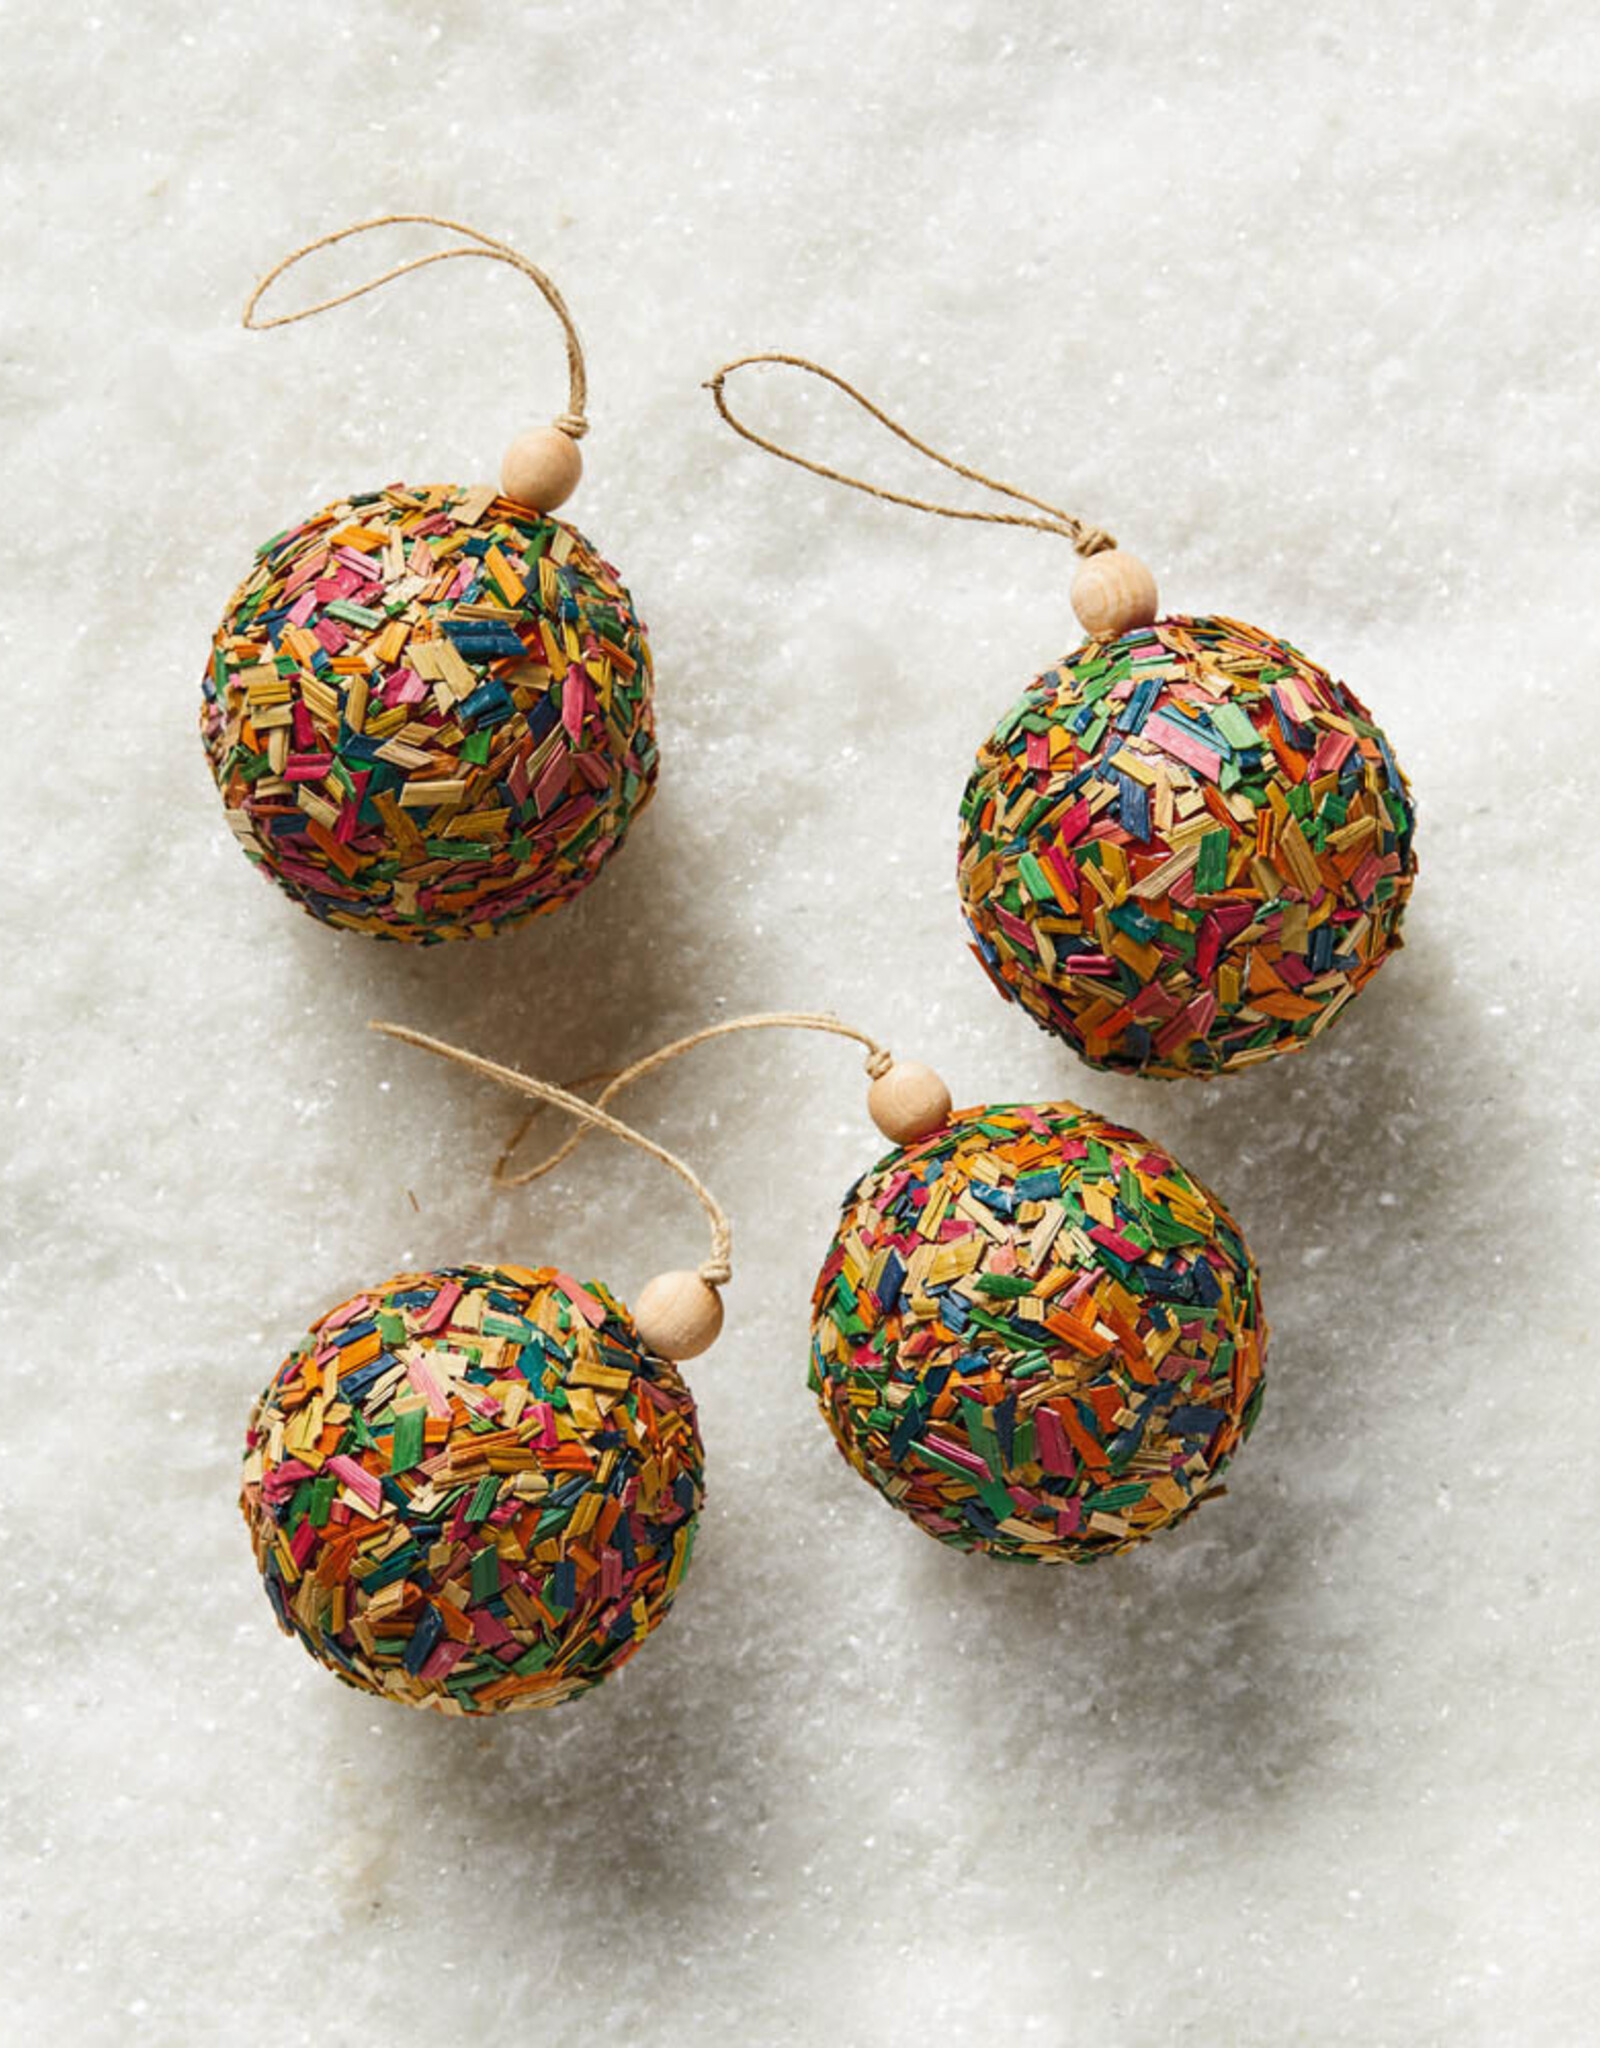 Serrv Confetti Ball Ornaments